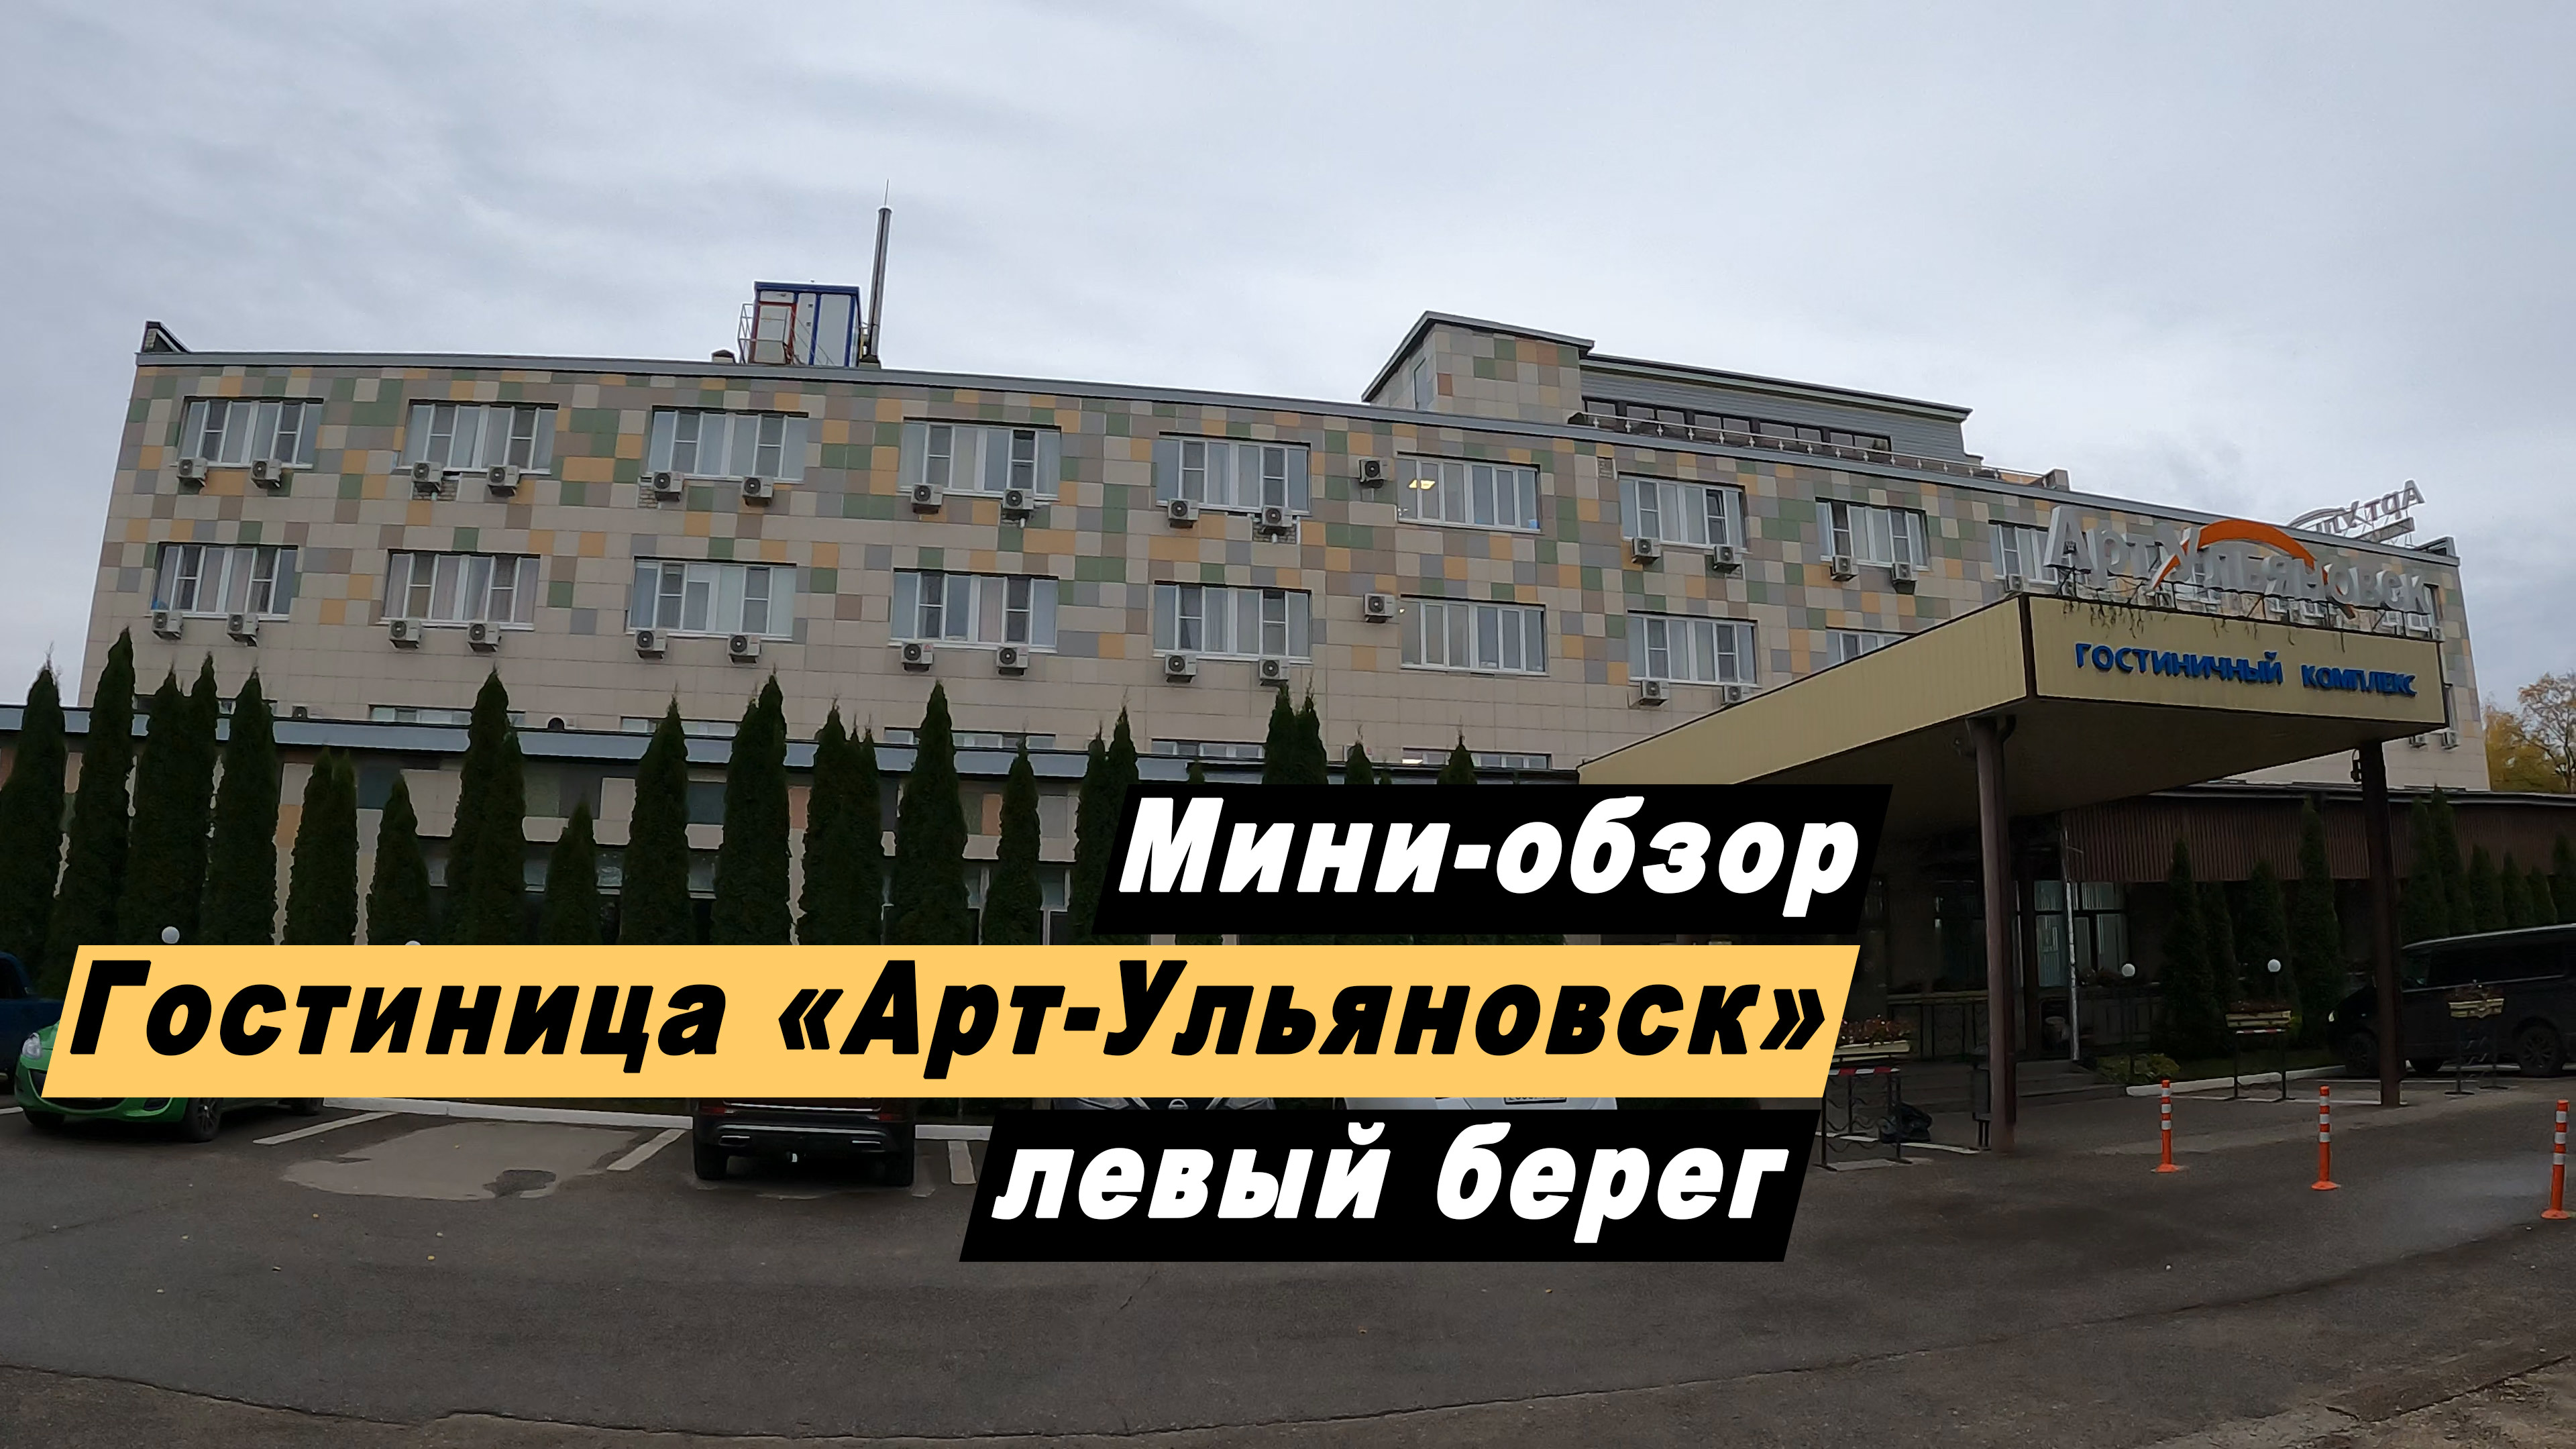 Мини-обзор гостиницы "Арт-Ульяновск" левый берег в городе Ульяновск Ульяновской области.